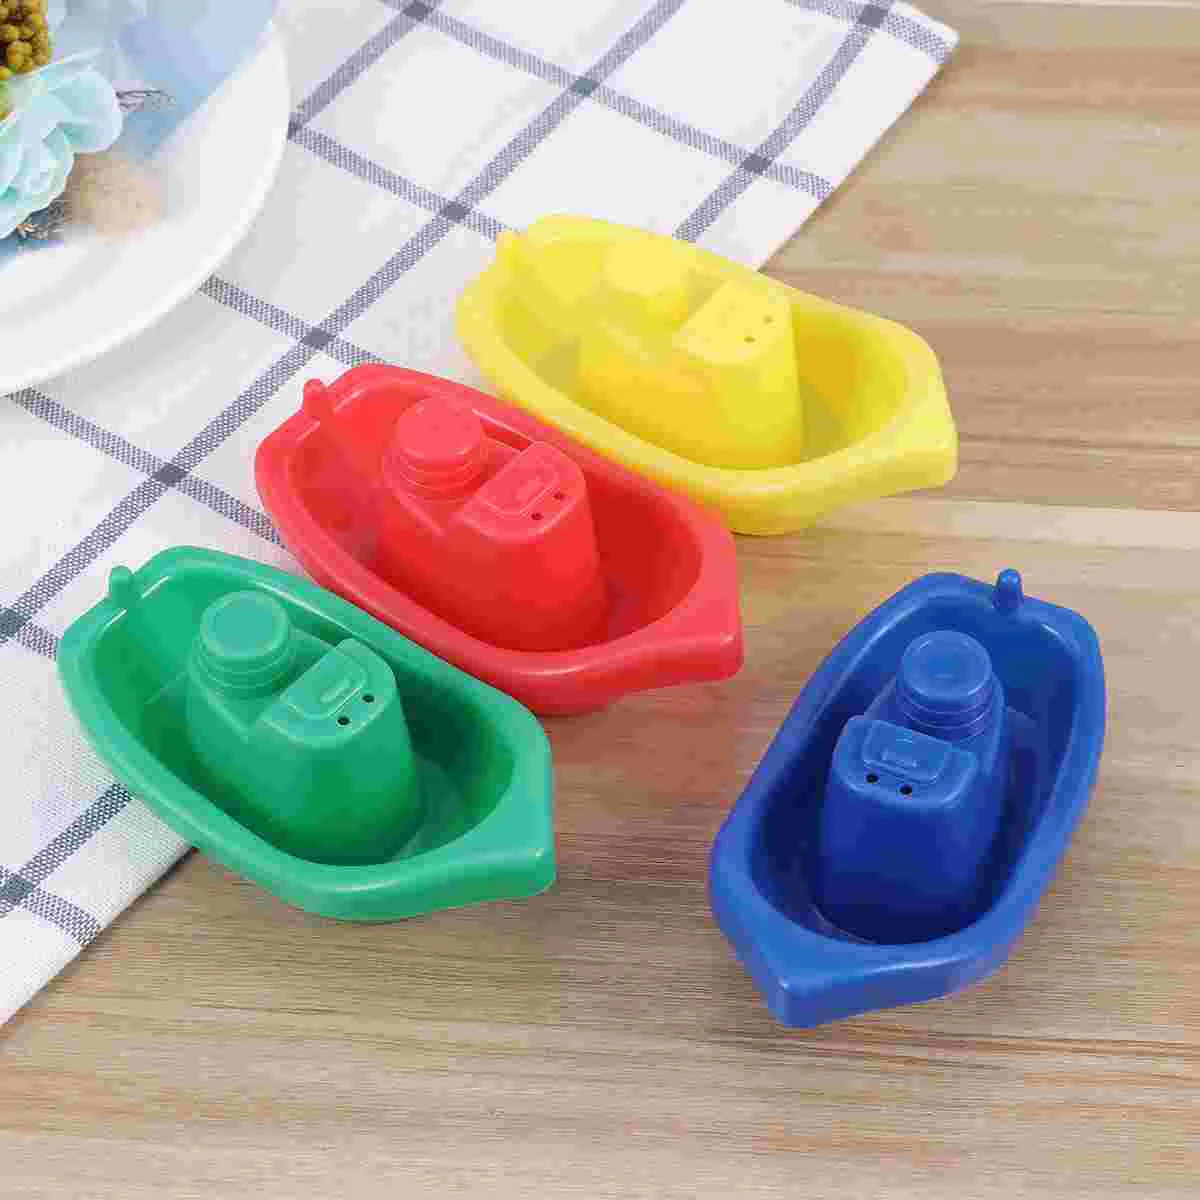 

4 шт., детские пластиковые игрушки для купания, разные цвета